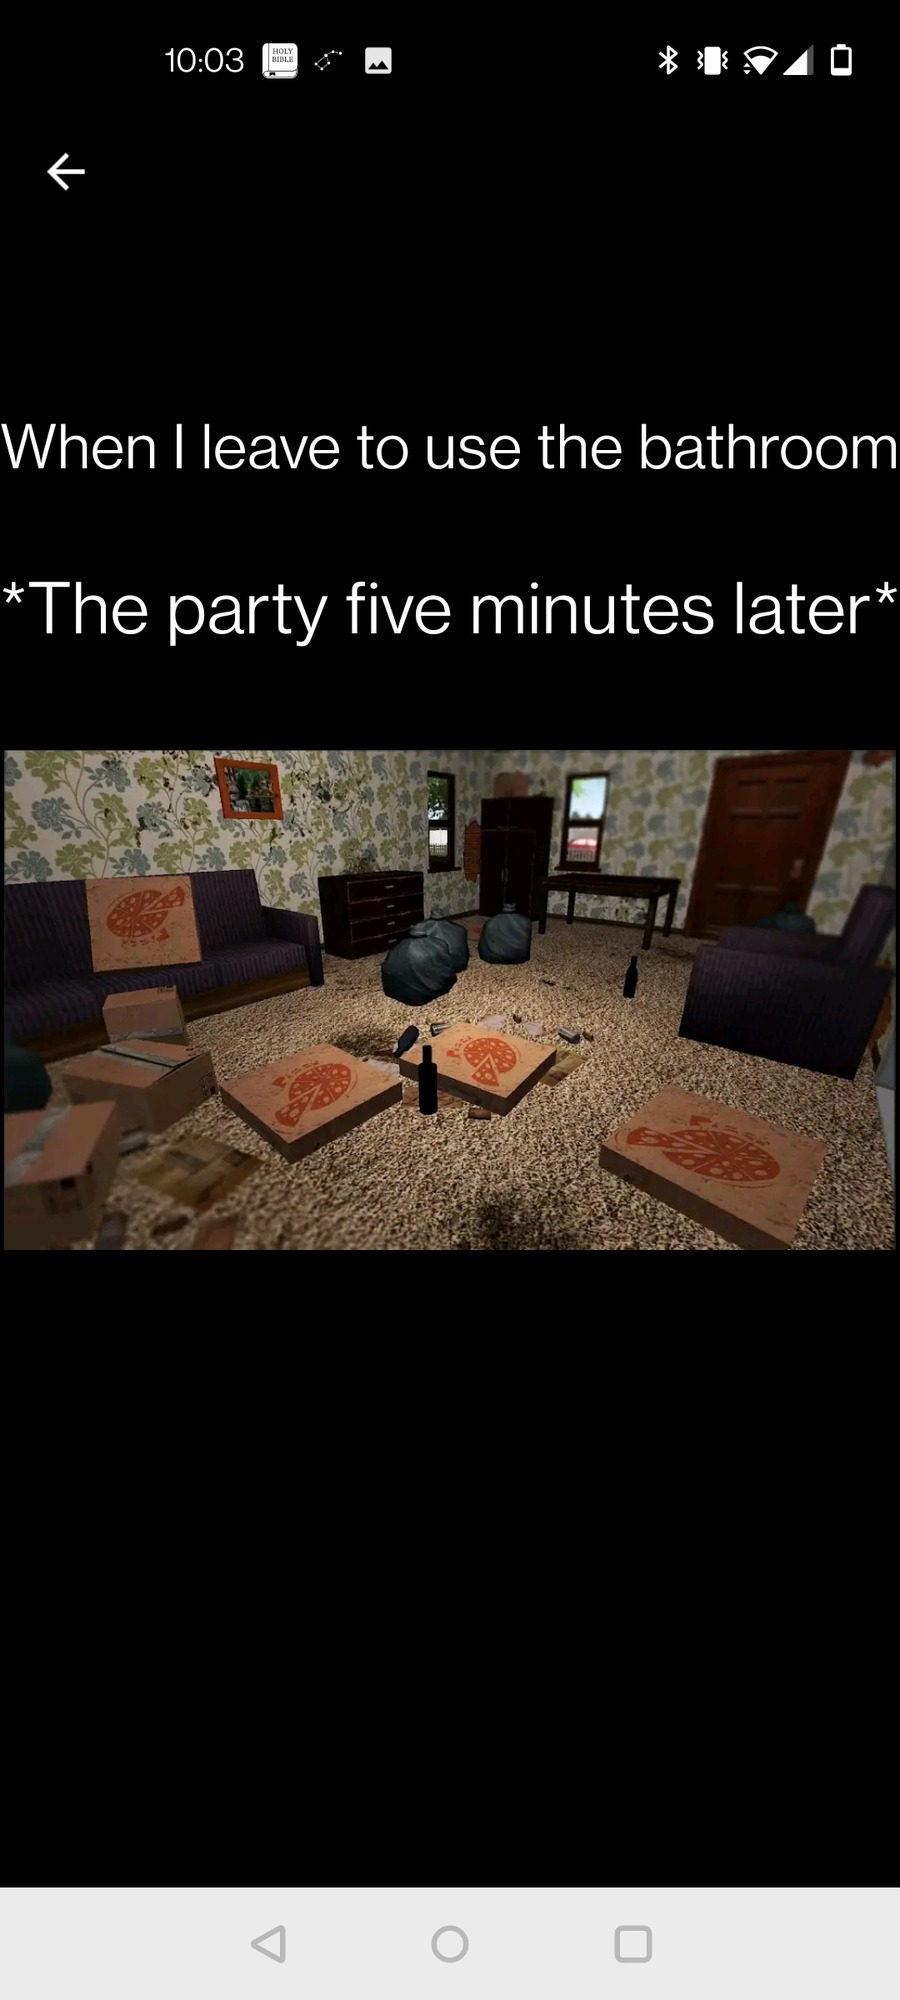 Parties be like - meme